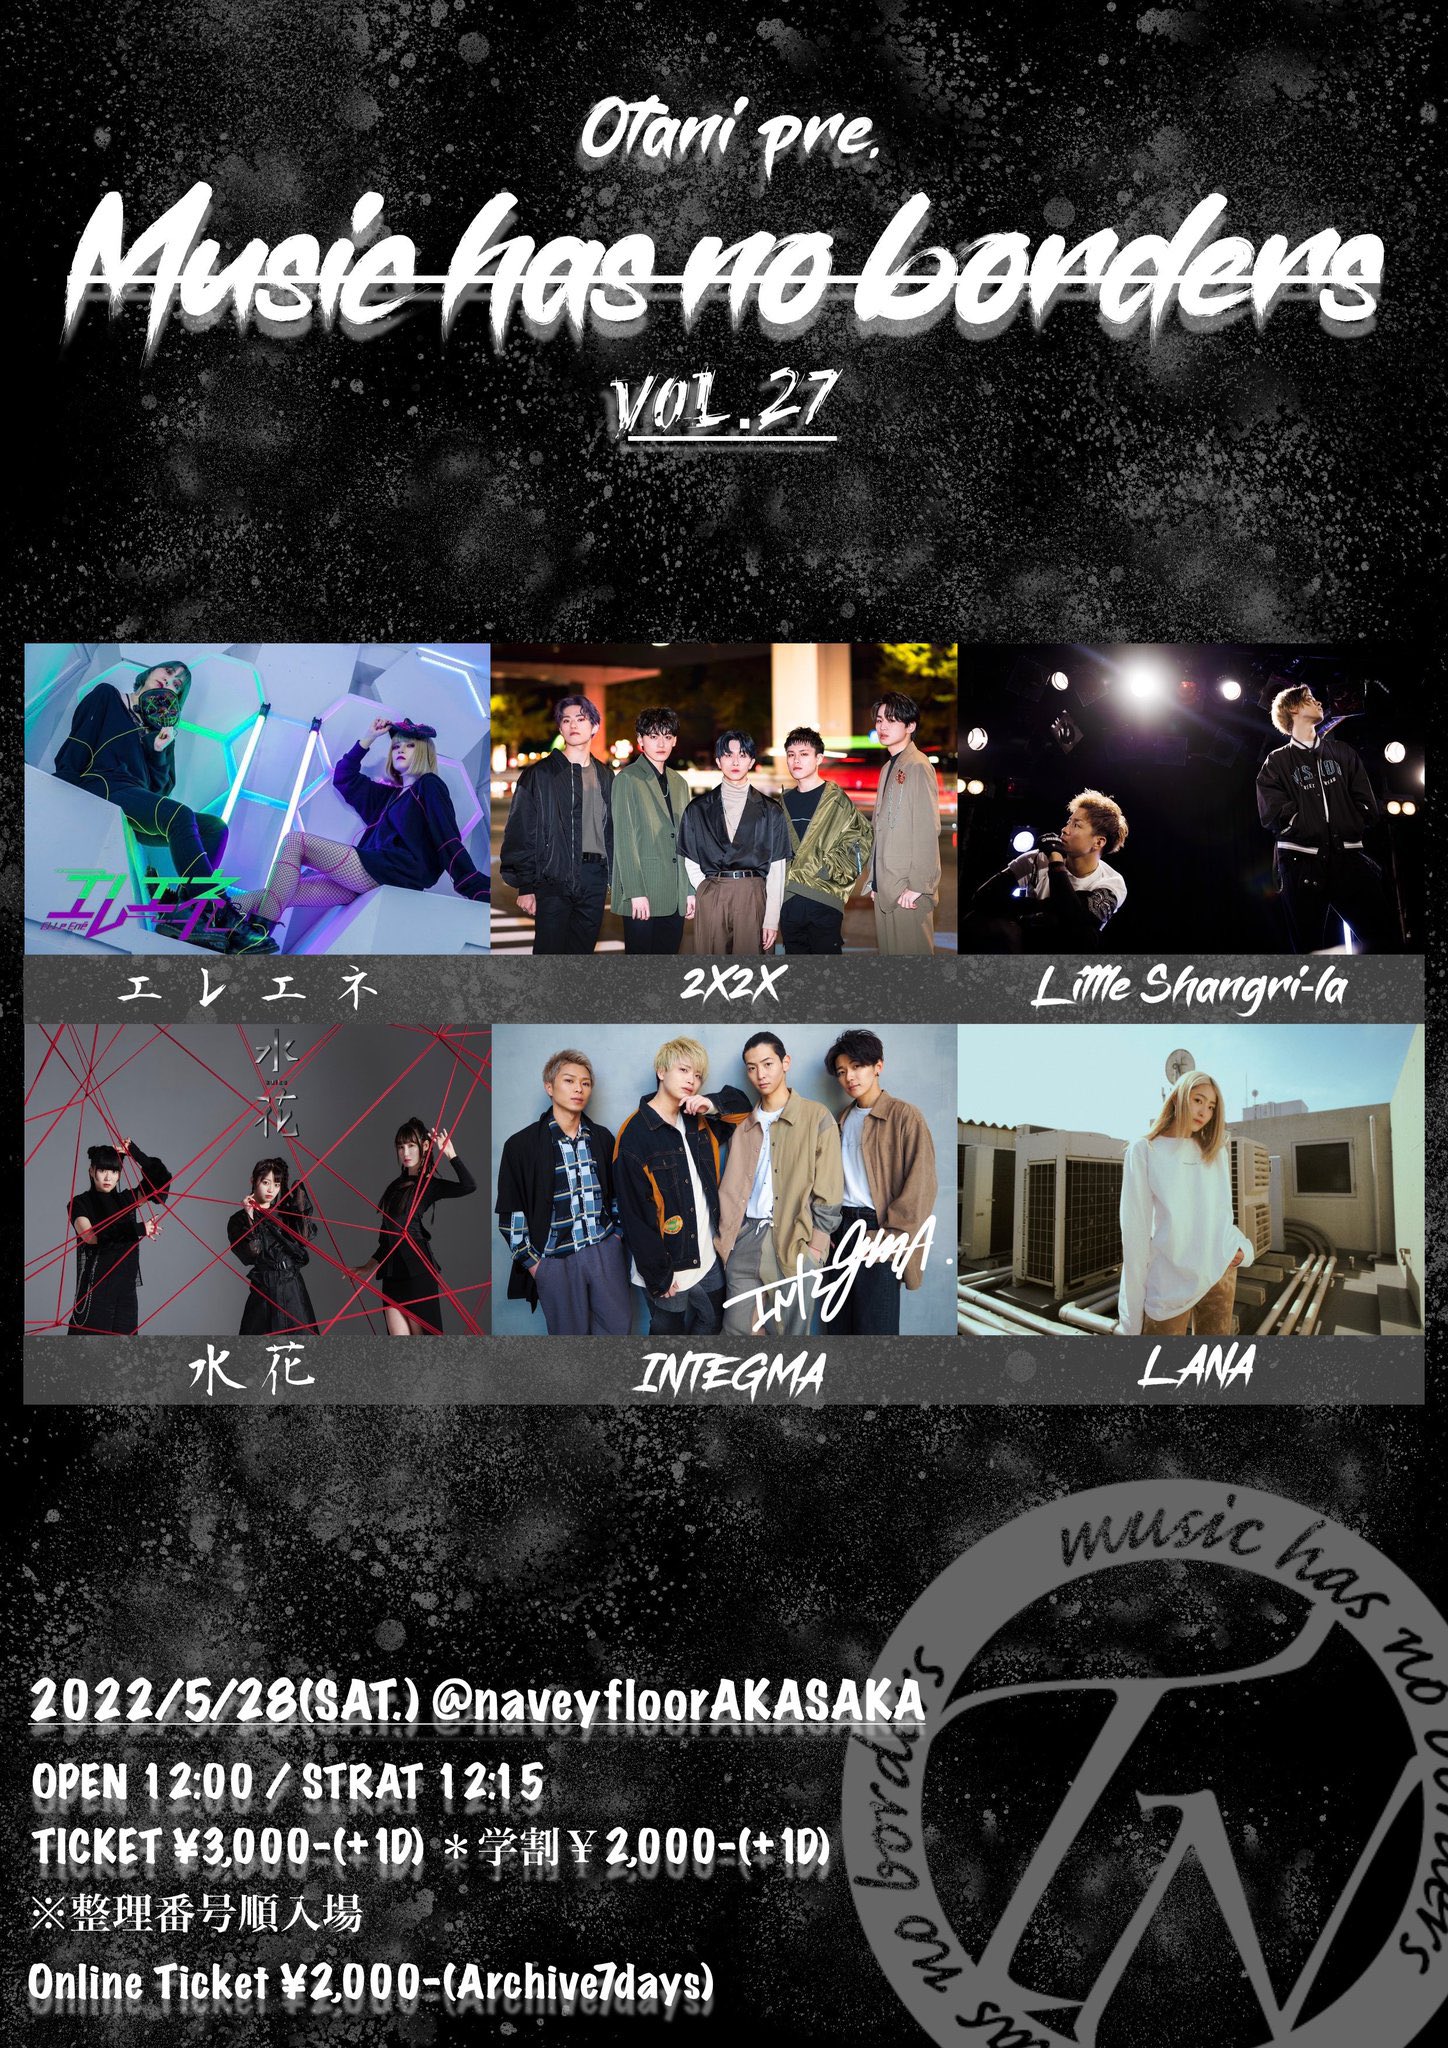 赤坂 navey floor『Music has no borders vol.27』ライブ出演